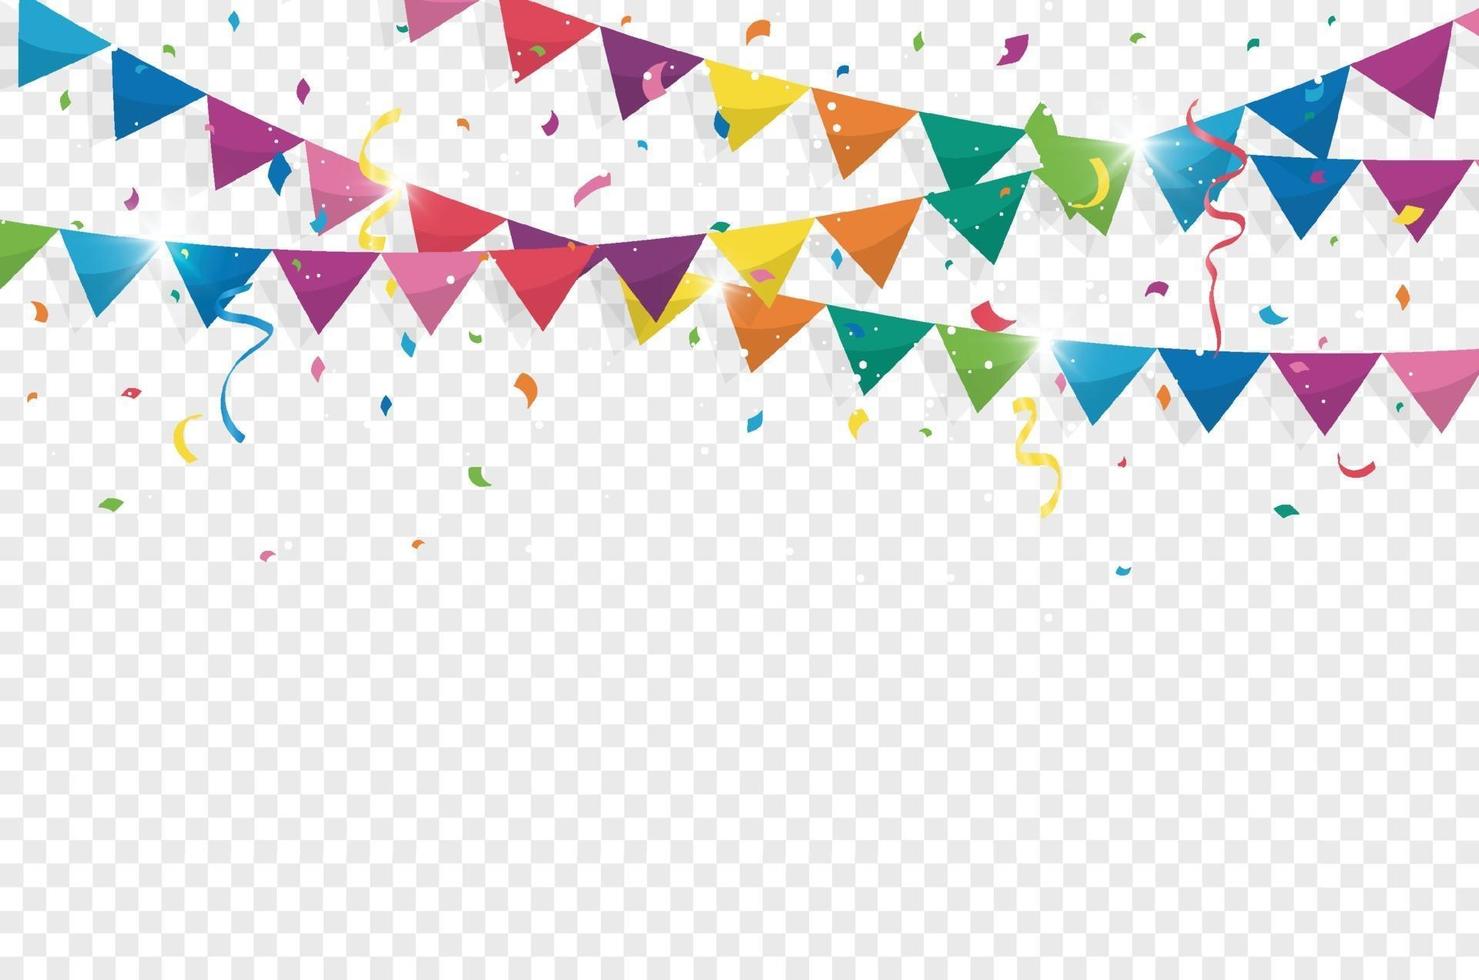 drapeaux banderoles colorés avec des confettis et des rubans pour anniversaire, fête, carnaval, anniversaire et fête de vacances sur fond blanc. illustration vectorielle vecteur